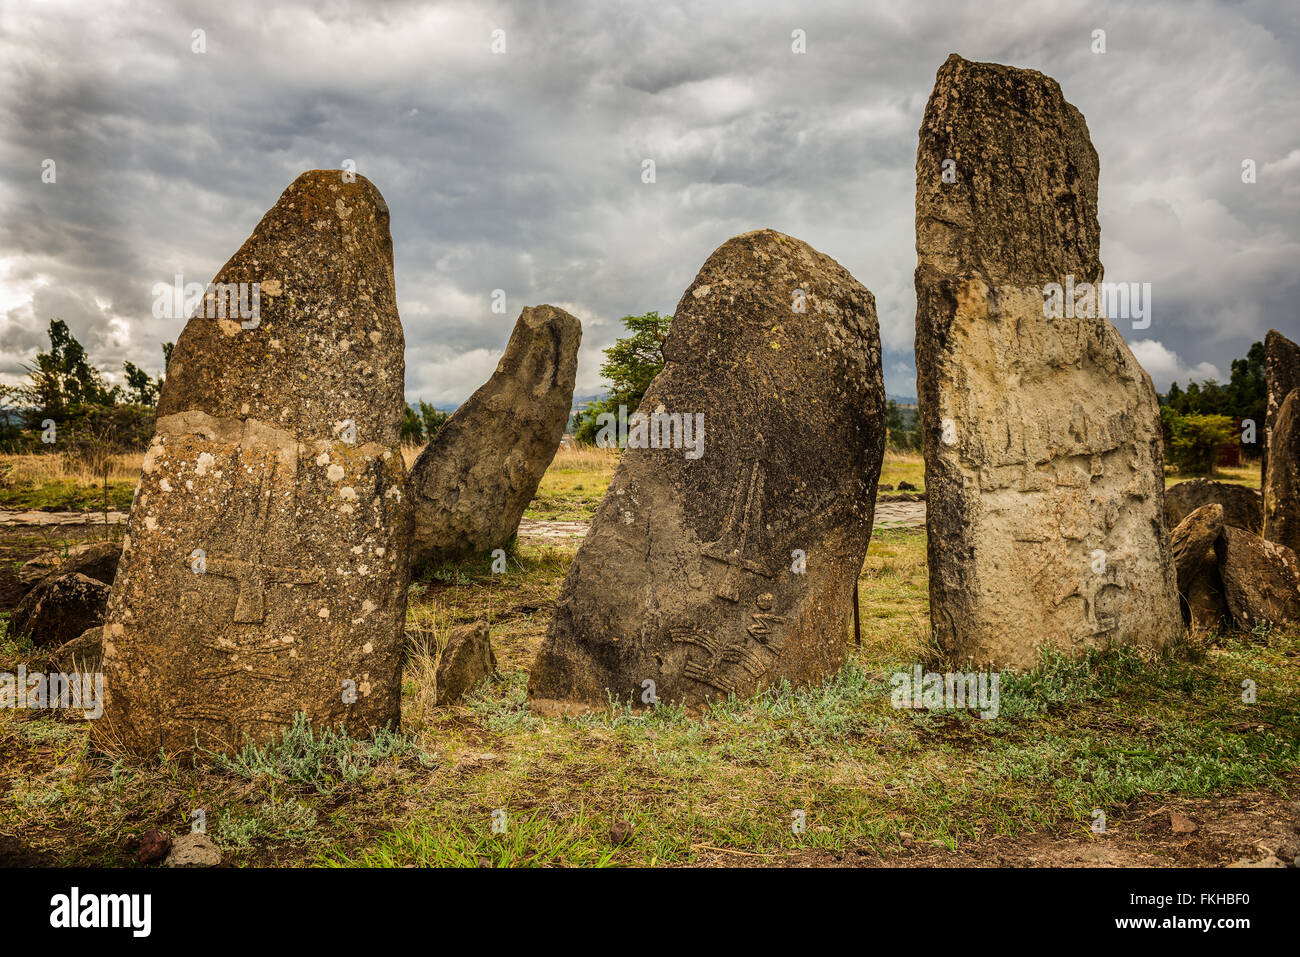 Tiya mégalithique des piliers de pierre, Site du patrimoine mondial de l'UNESCO à Addisabéba, près de l'Éthiopie. Banque D'Images